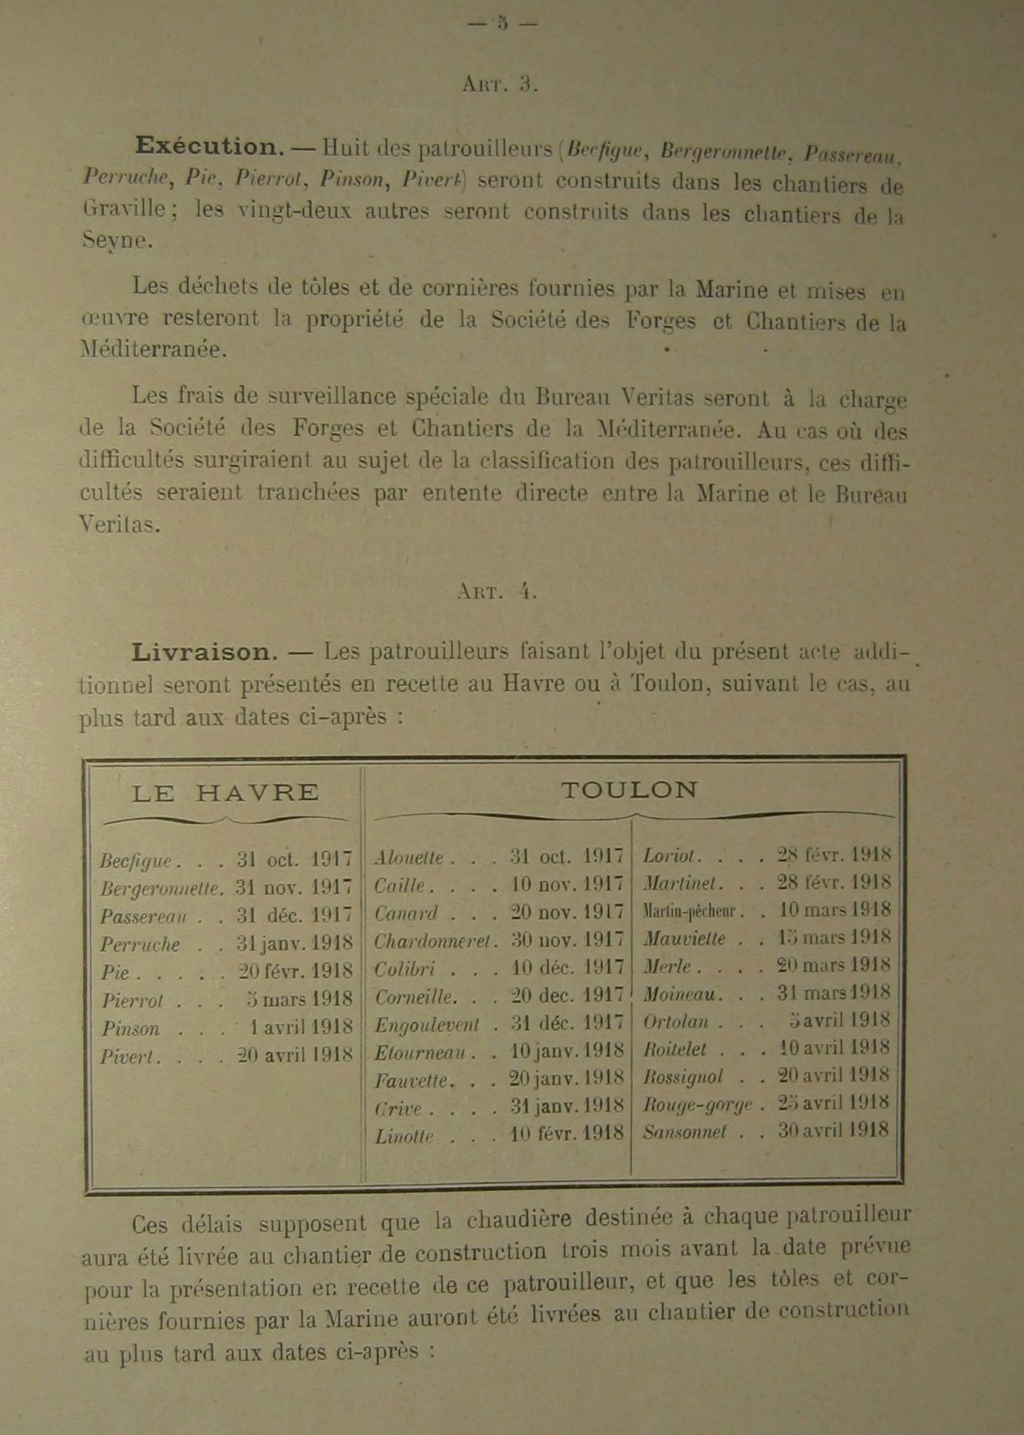 paquebot auxiliaires brest - Les navires auxiliaires réquisitionnés de 1939/40. - Page 7 1917_010